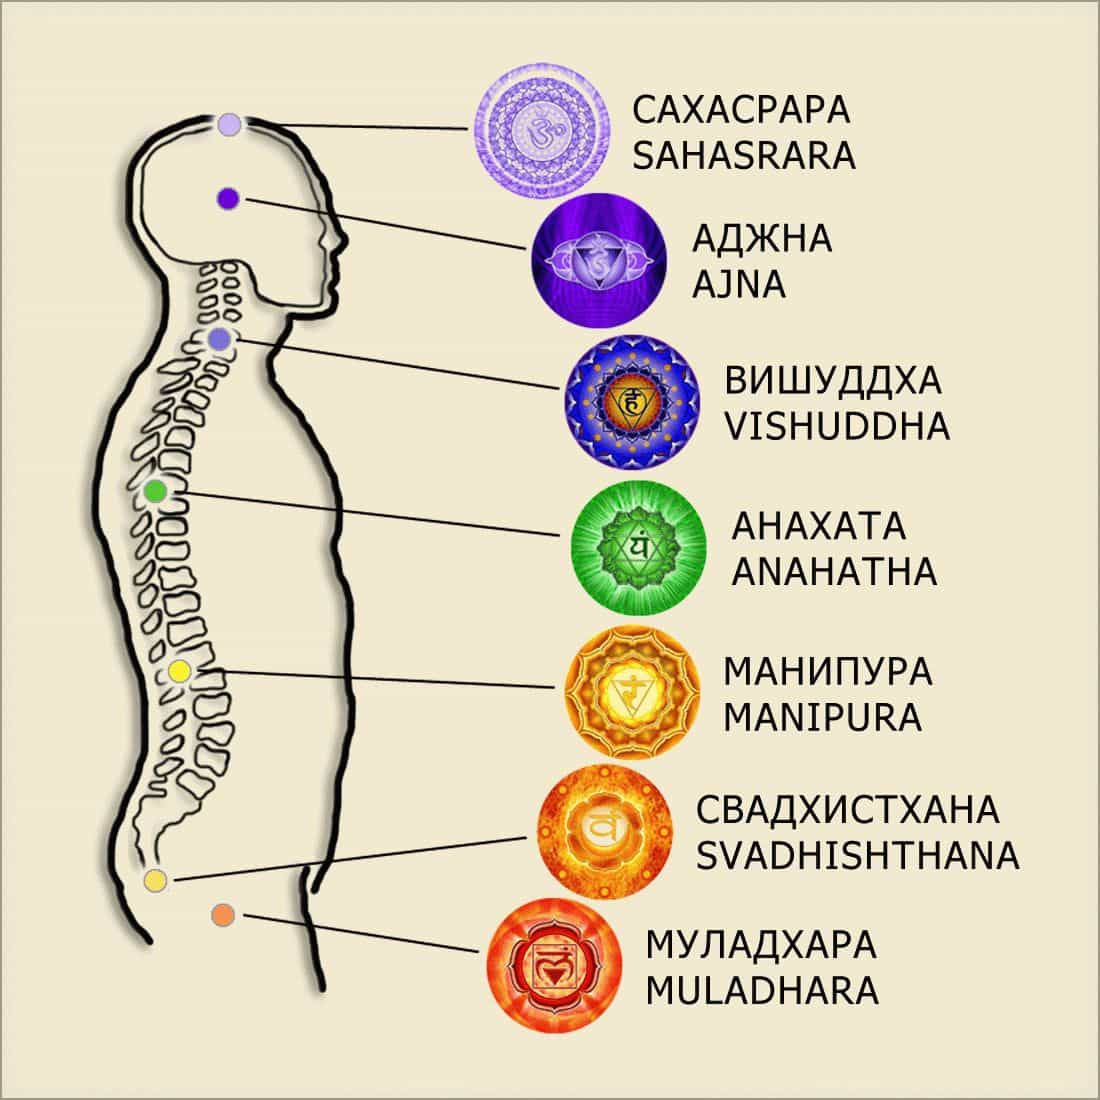 Чакры — это семь энергетических центров человека, которые принимают, накапливают и распределяют тонкие земную и космическую энергии. Нарушения в работе чакр часто приводят к проблемам и разного рода болезням. Чакры расположены в местах крупных нервных сплетений. Каждая чакра имеет свое название и имеет свое предназначение: Муладхара, Свадхистана, Манипура, Анахата, Вишудха, Аджна, Сахасрара. Ниже прочтите их краткое описание...